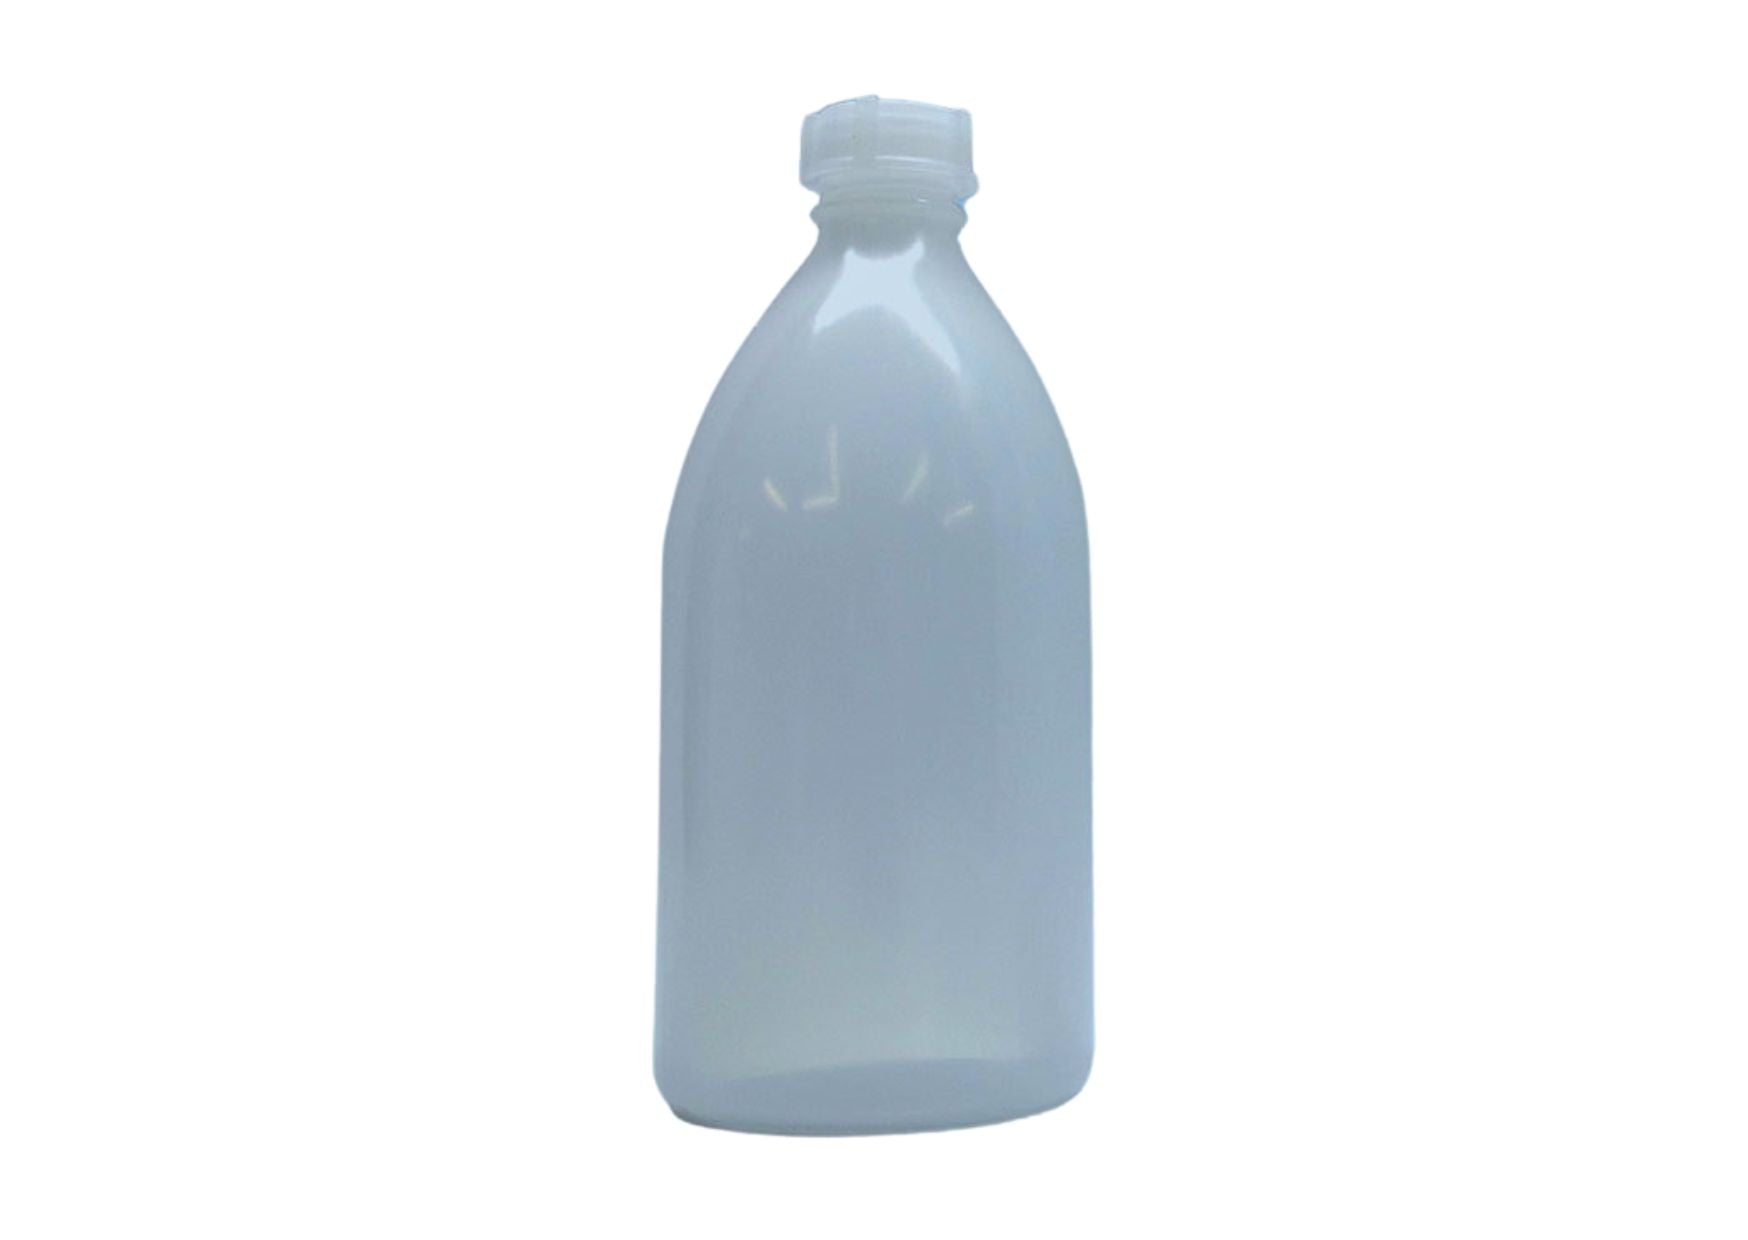 Spritz-Leerflasche mit Spritzaufsatz, 500 ml-Flasche - 0